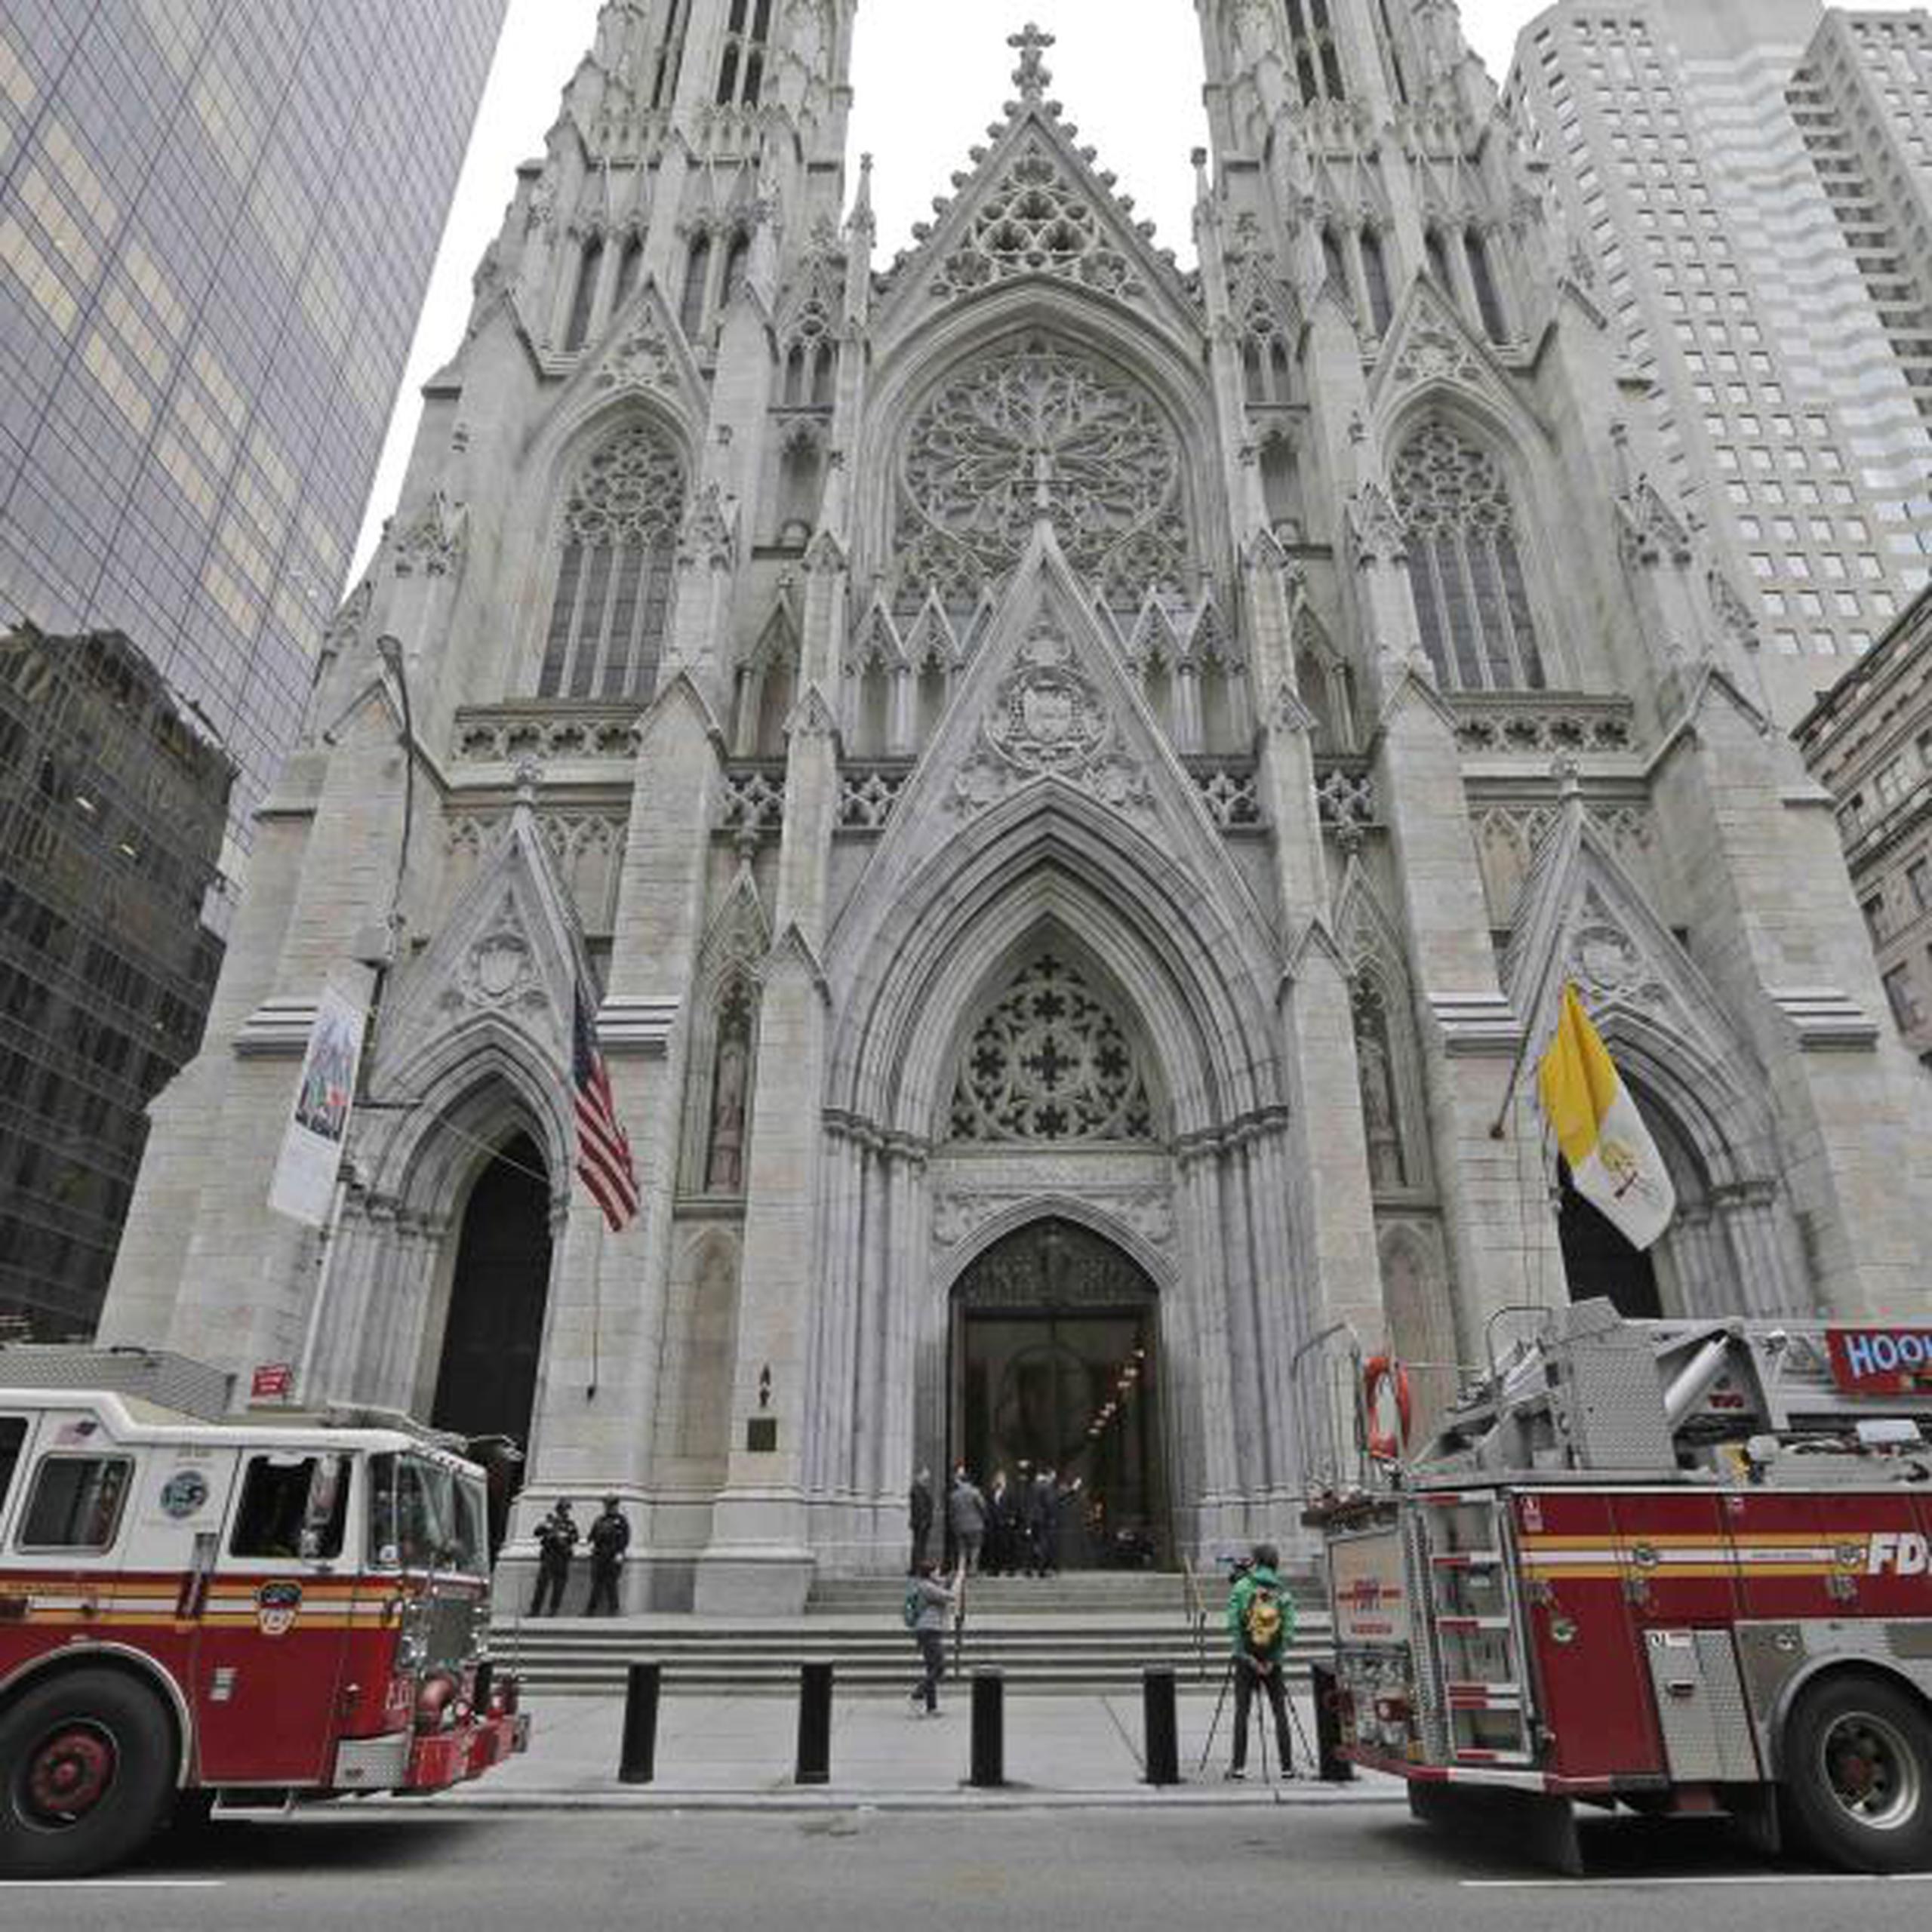 Bomberos examinan la catedral de San Patricio luego del incidente del hombre con gasolina en los predios de la emblemática estructura.  (AP)